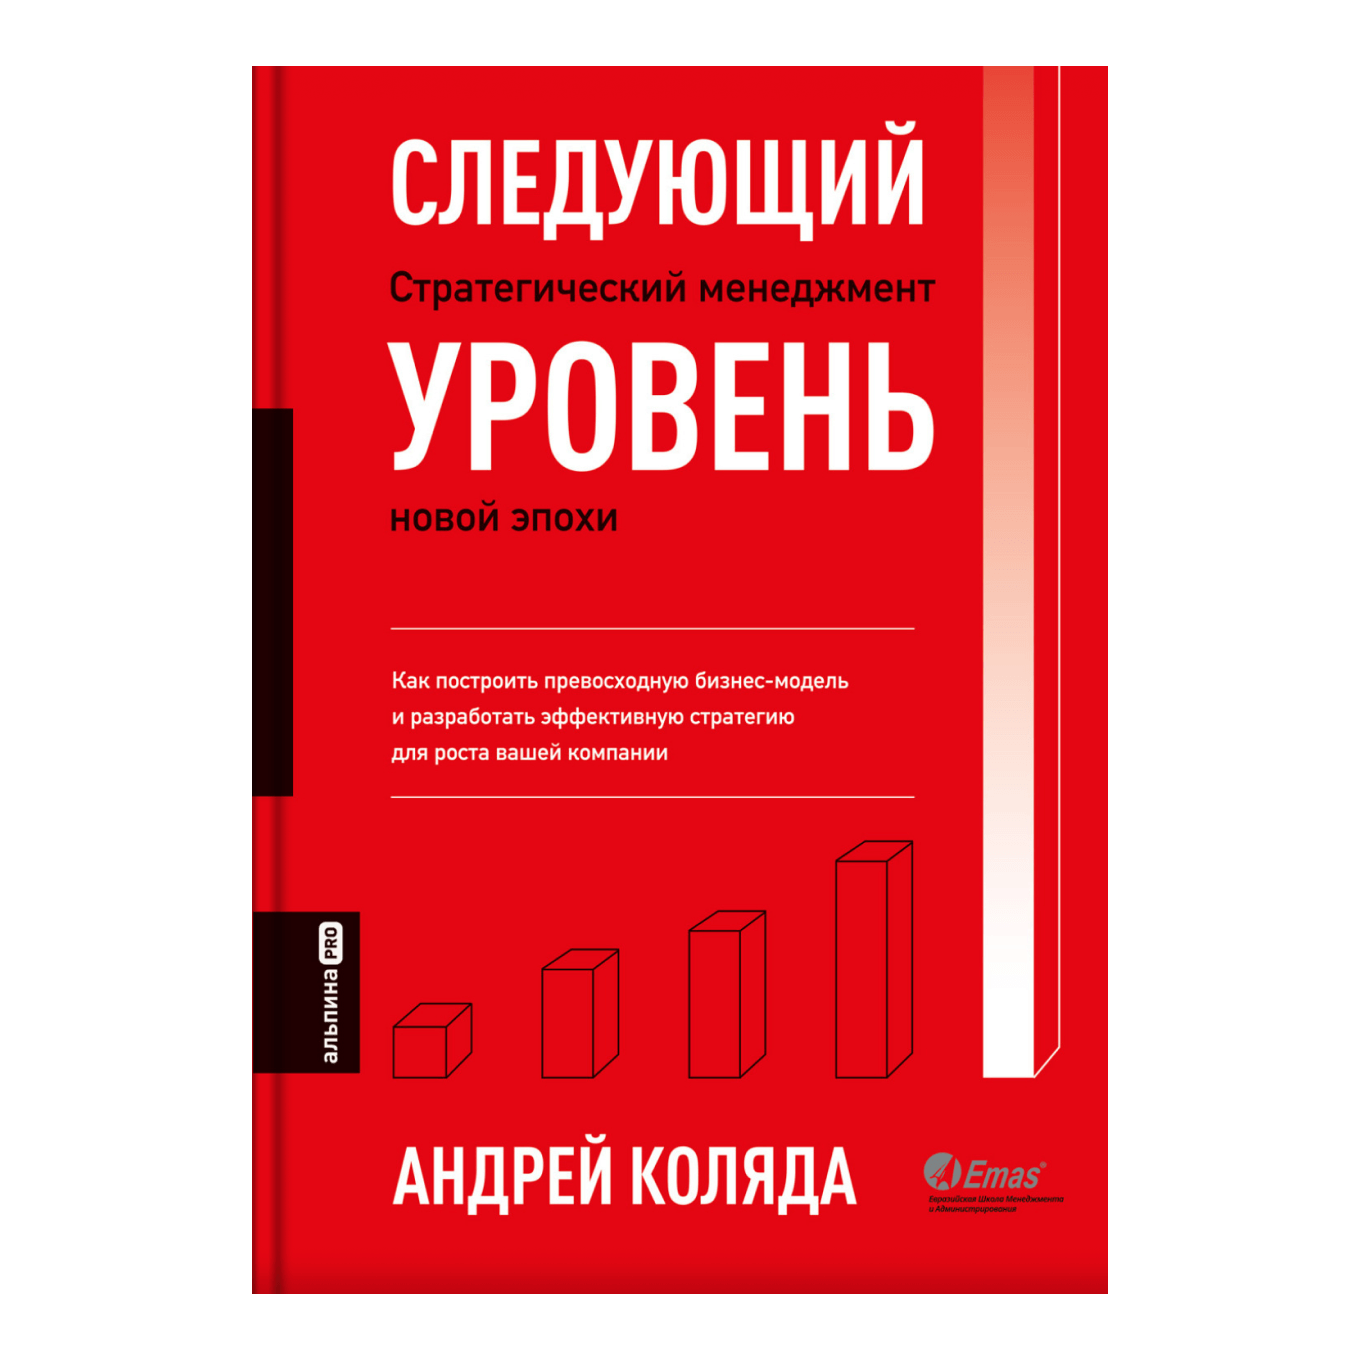 Книга «Следующий уровень. Стратегический менеджмент новой эпохи», Андрей Коляда